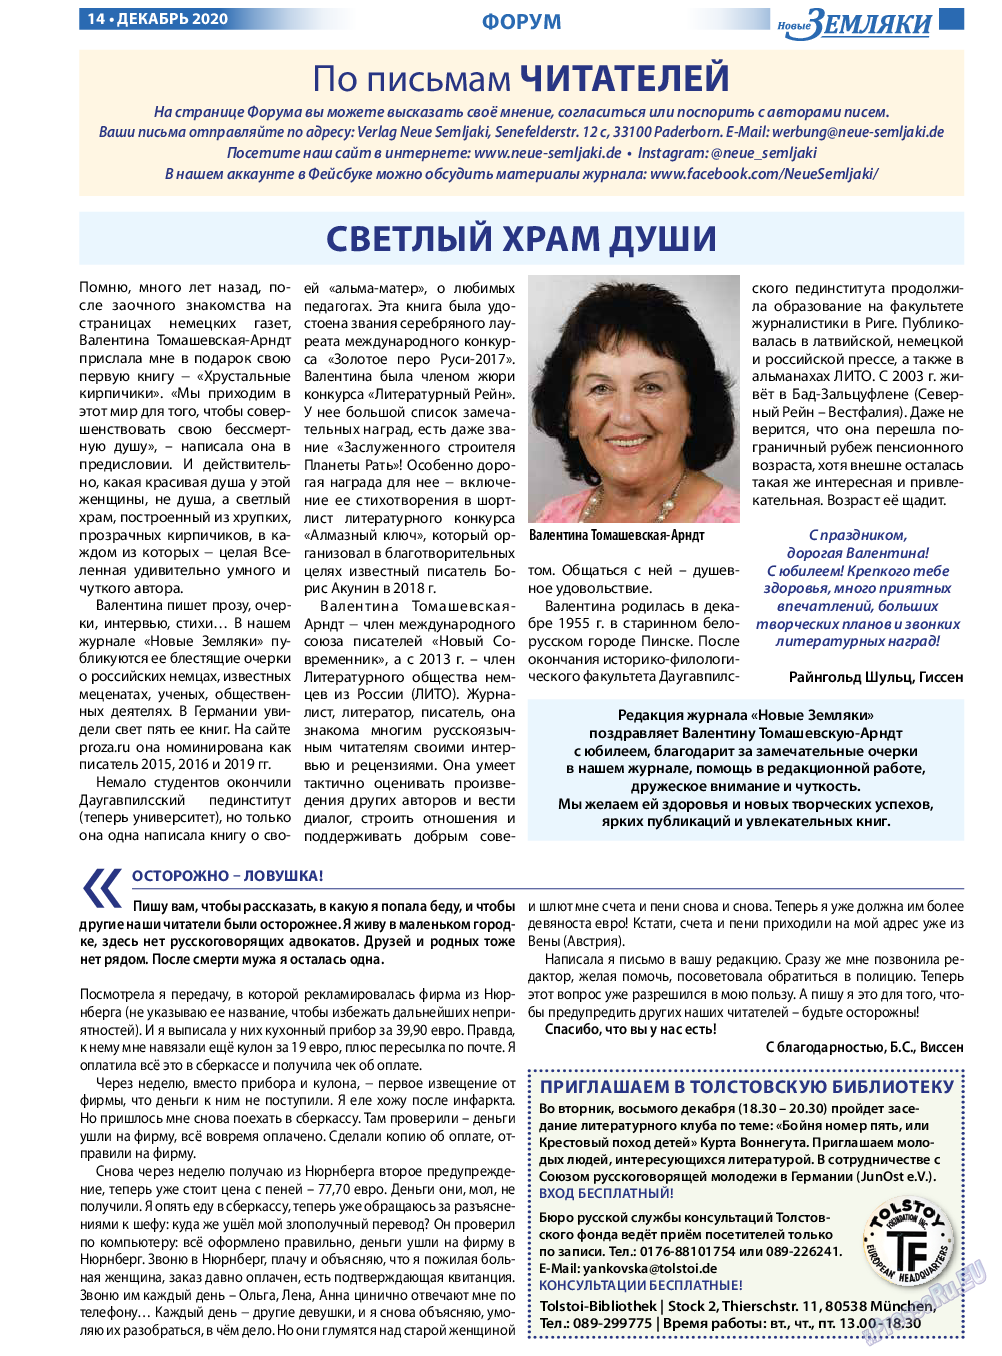 Новые Земляки, газета. 2020 №12 стр.14